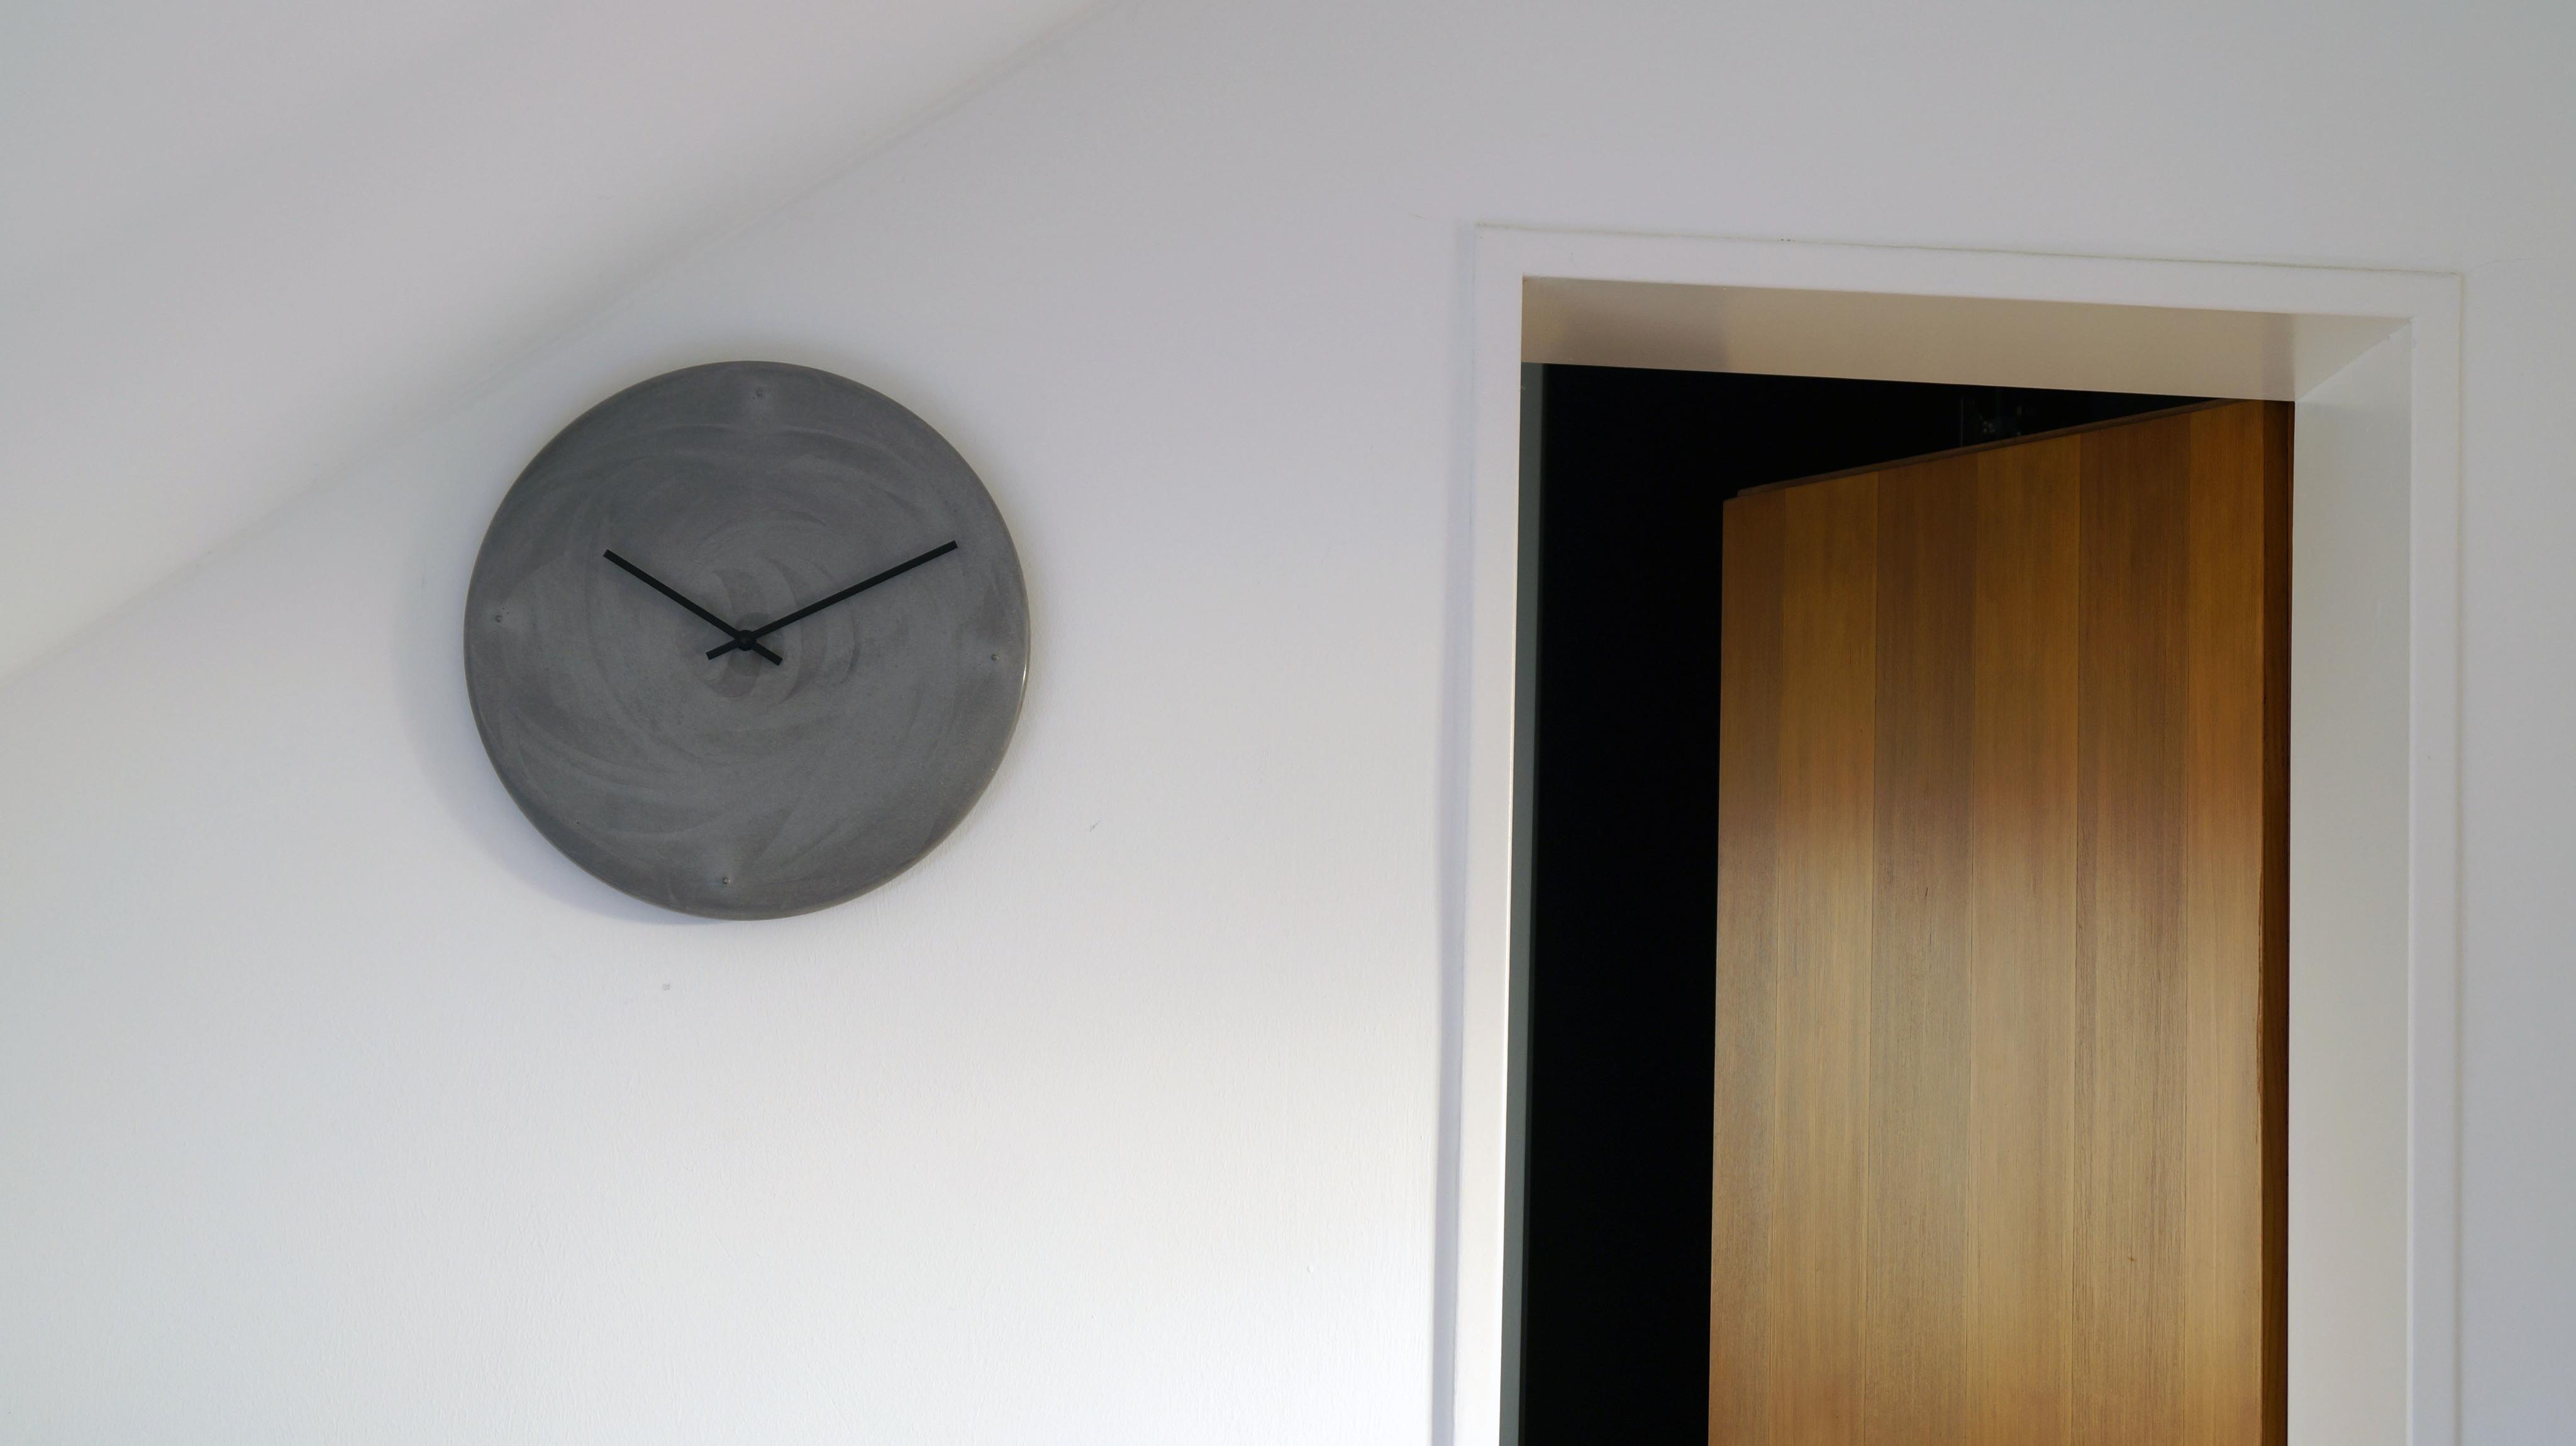 ORA DUE - Beton-Wanduhr #minimalistisch #wanduhr ©fattoAmano - lebemitbetonung.de